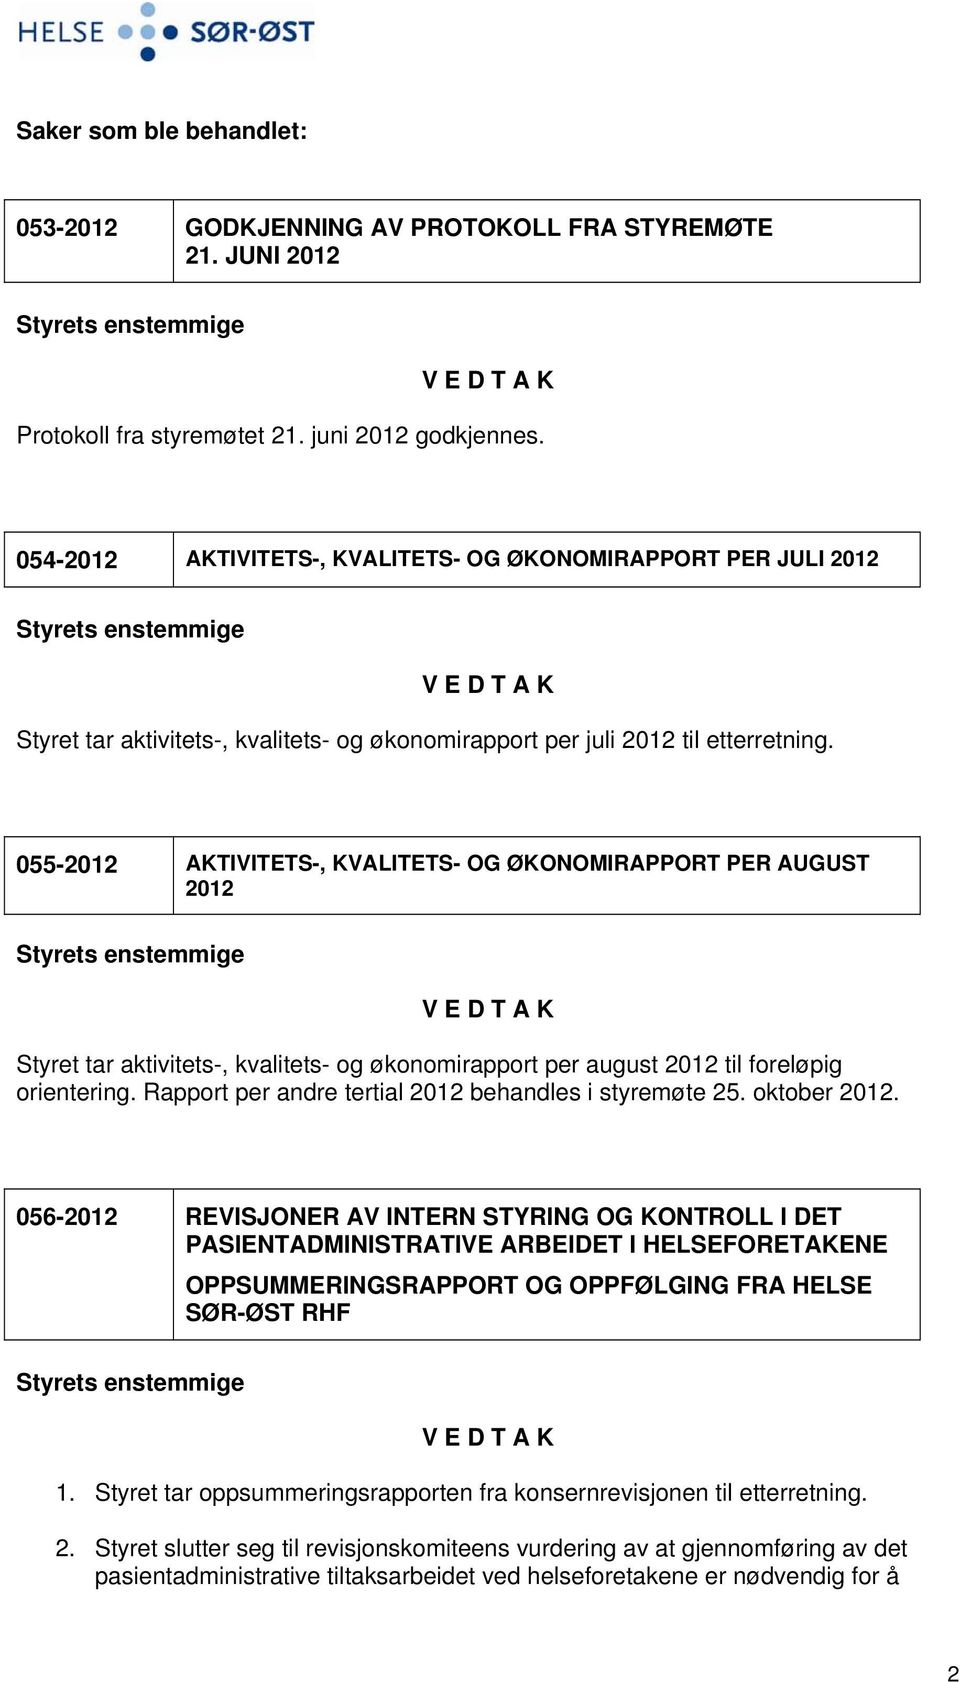 055-2012 AKTIVITETS-, KVALITETS- OG ØKONOMIRAPPORT PER AUGUST 2012 Styret tar aktivitets-, kvalitets- og økonomirapport per august 2012 til foreløpig orientering.